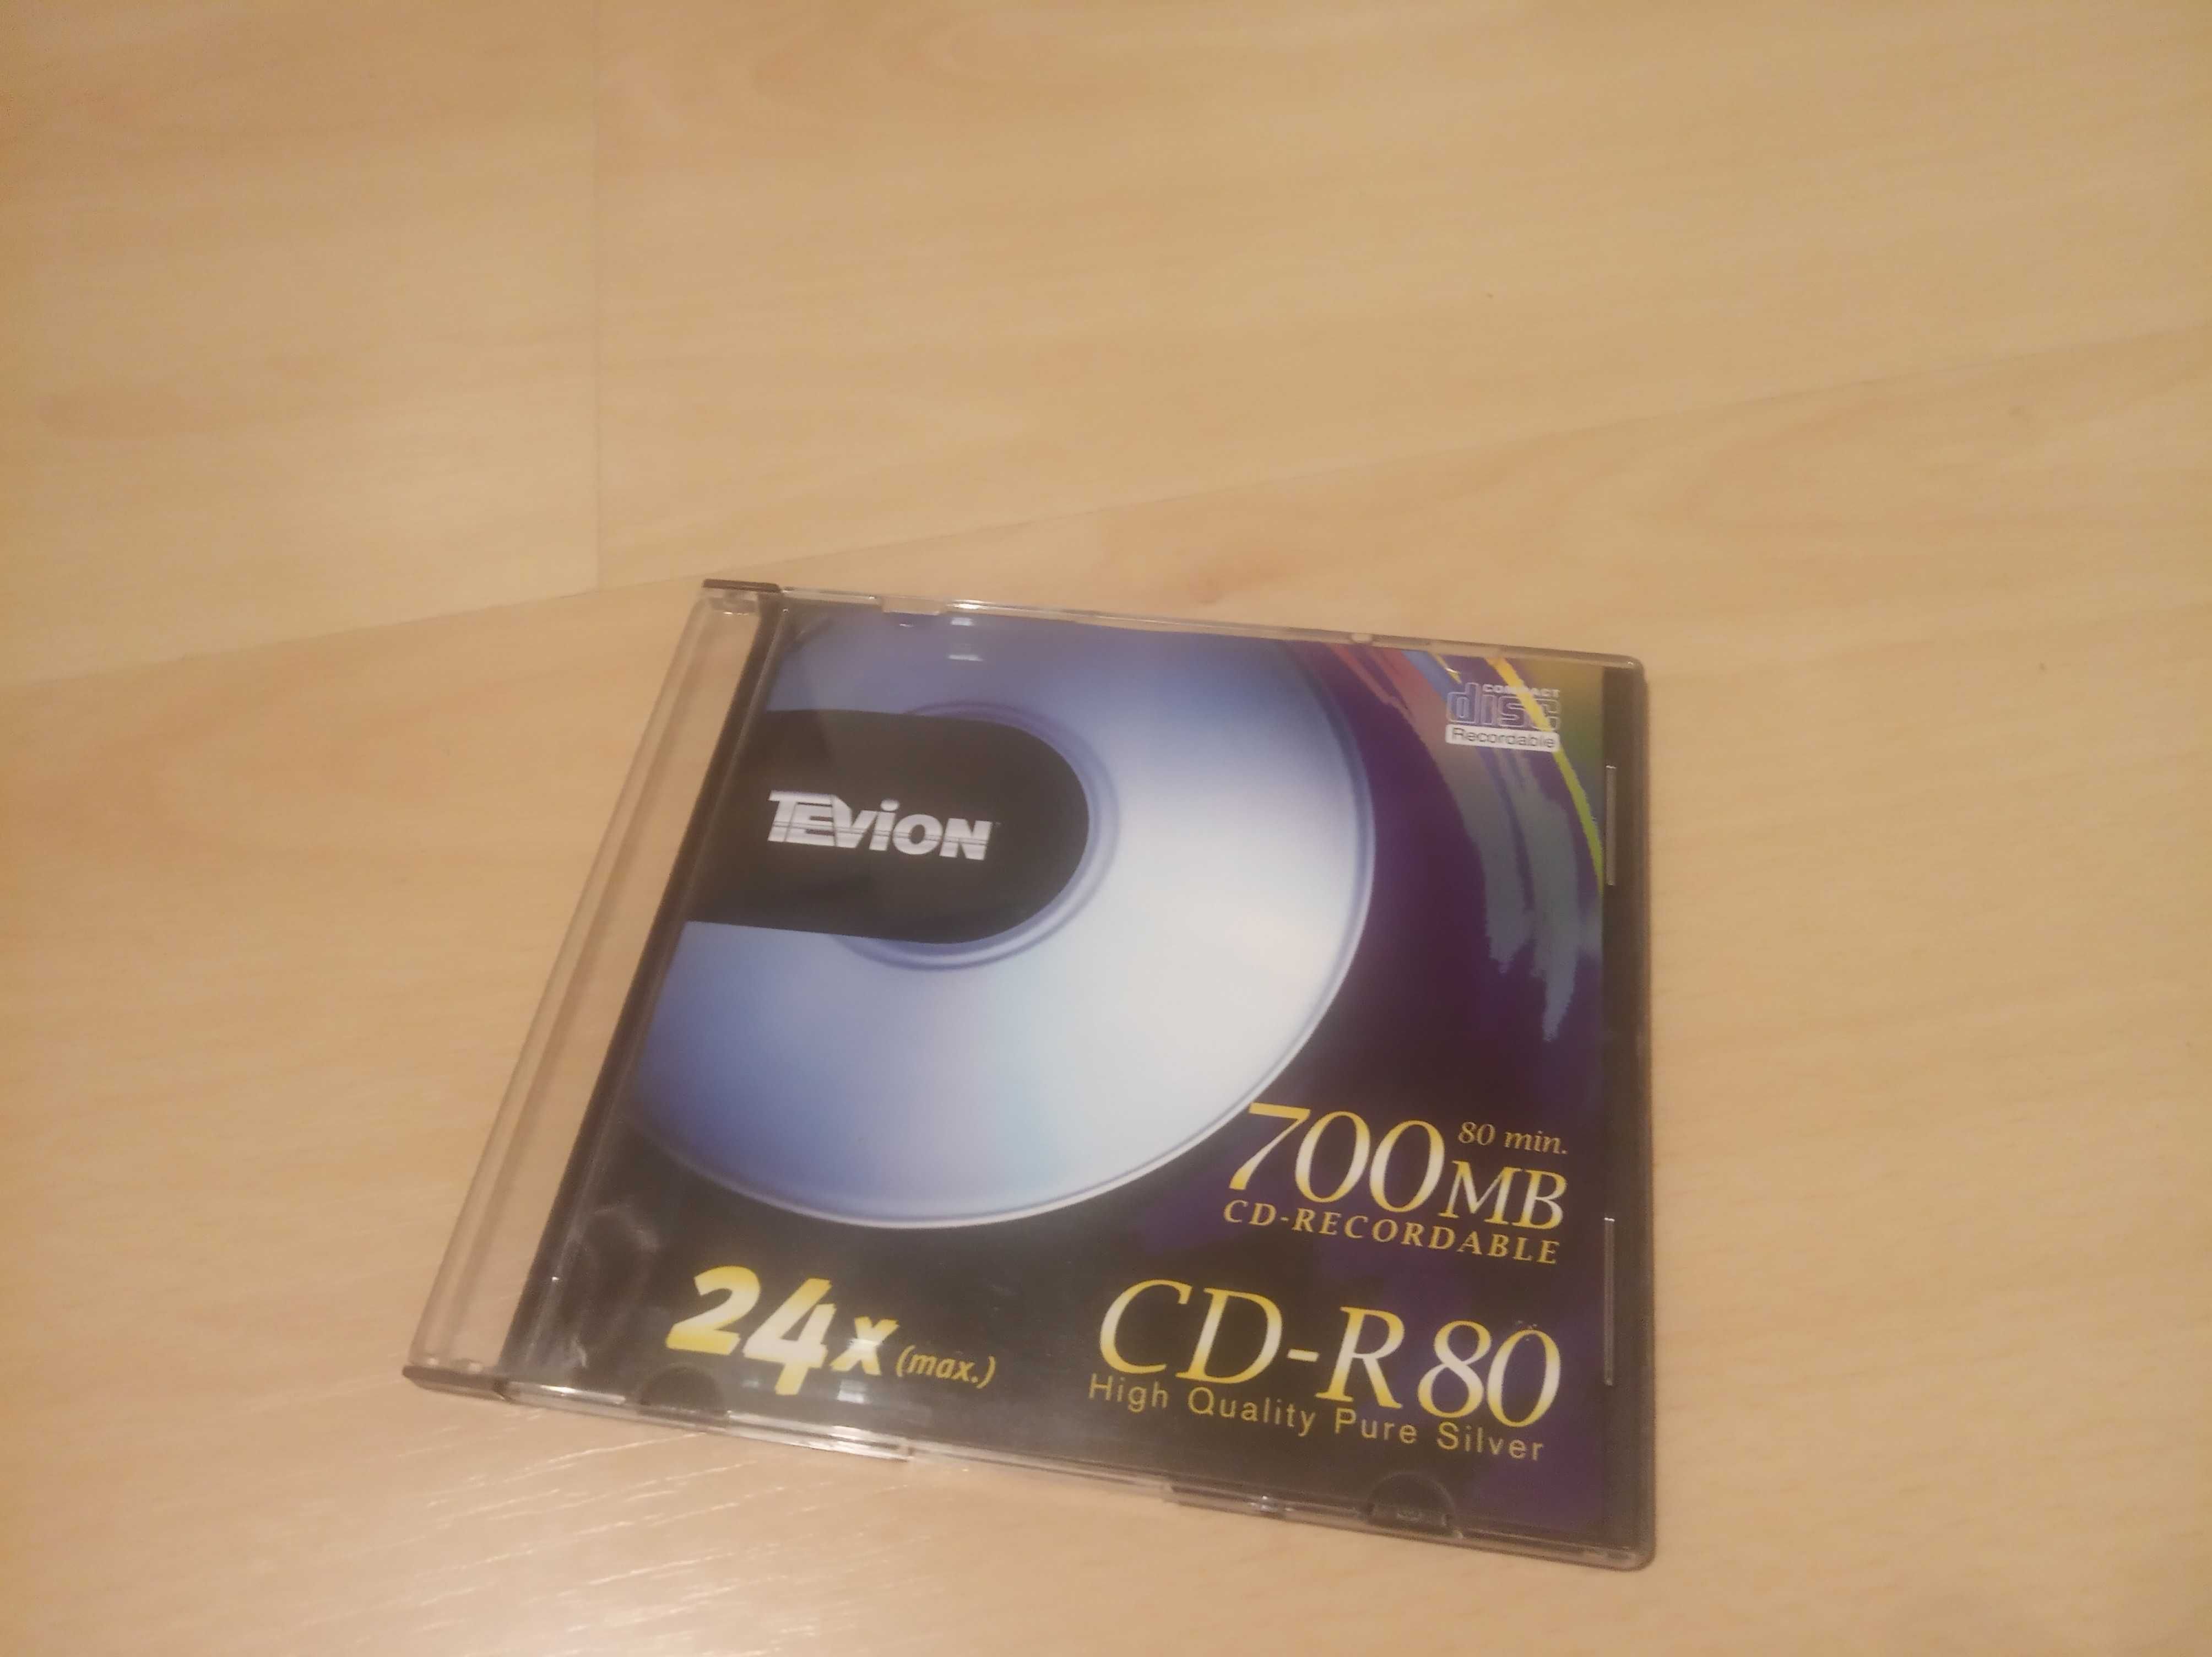 Płyty CD - R80 700 MB - nowe opakowanie zawierające 10 sztuk